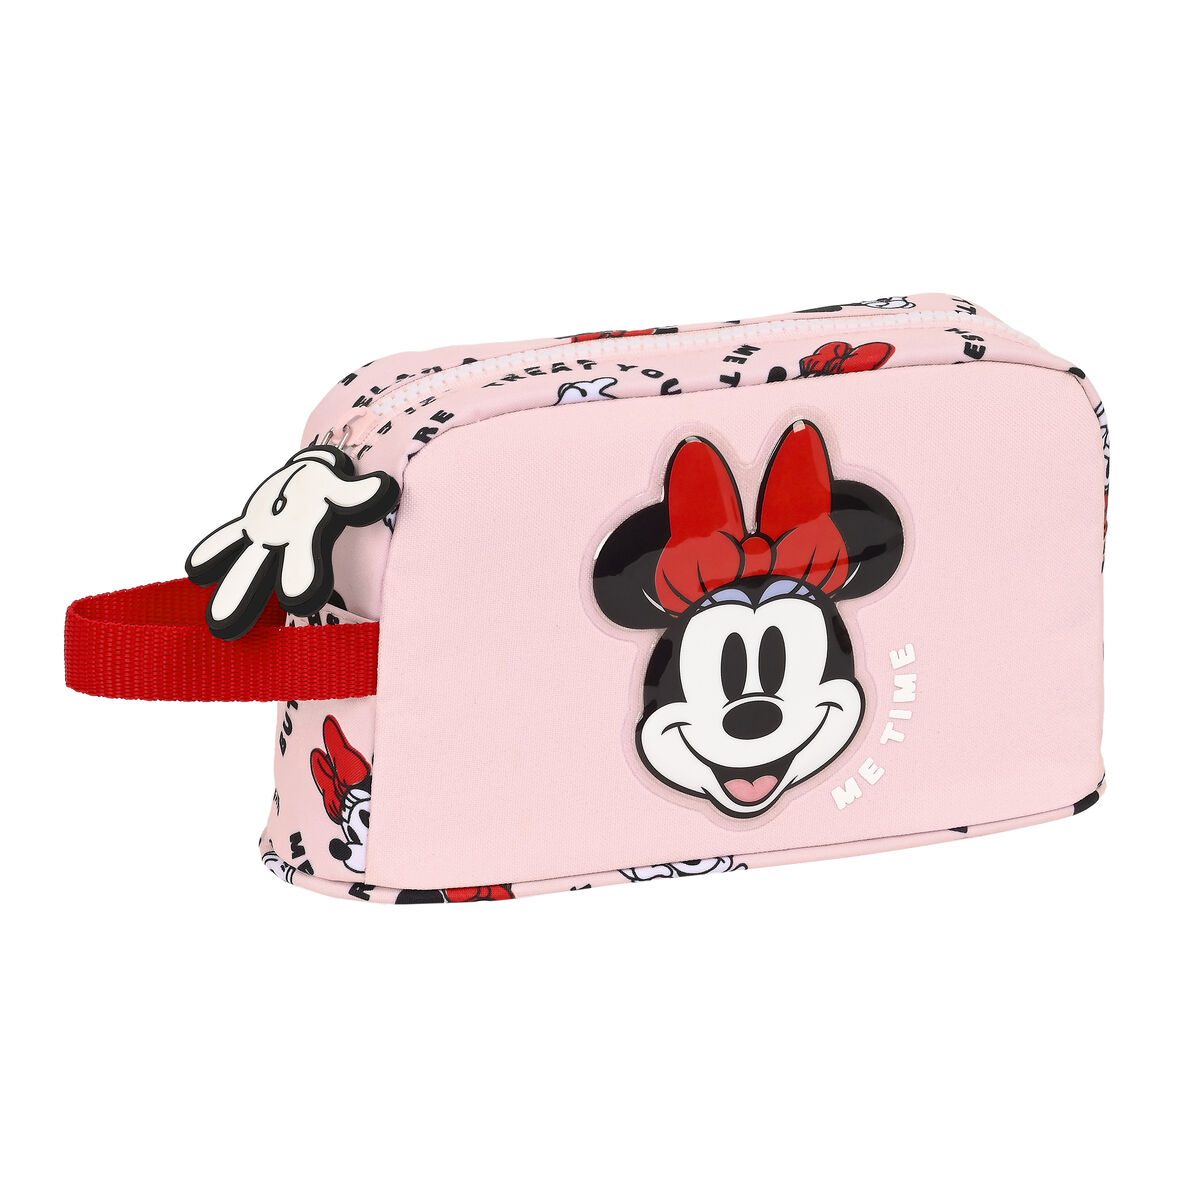 Geantă Termoizolantă pentru Gustări Minnie Mouse Me time 21.5 x 12 x 6.5 cm Roz